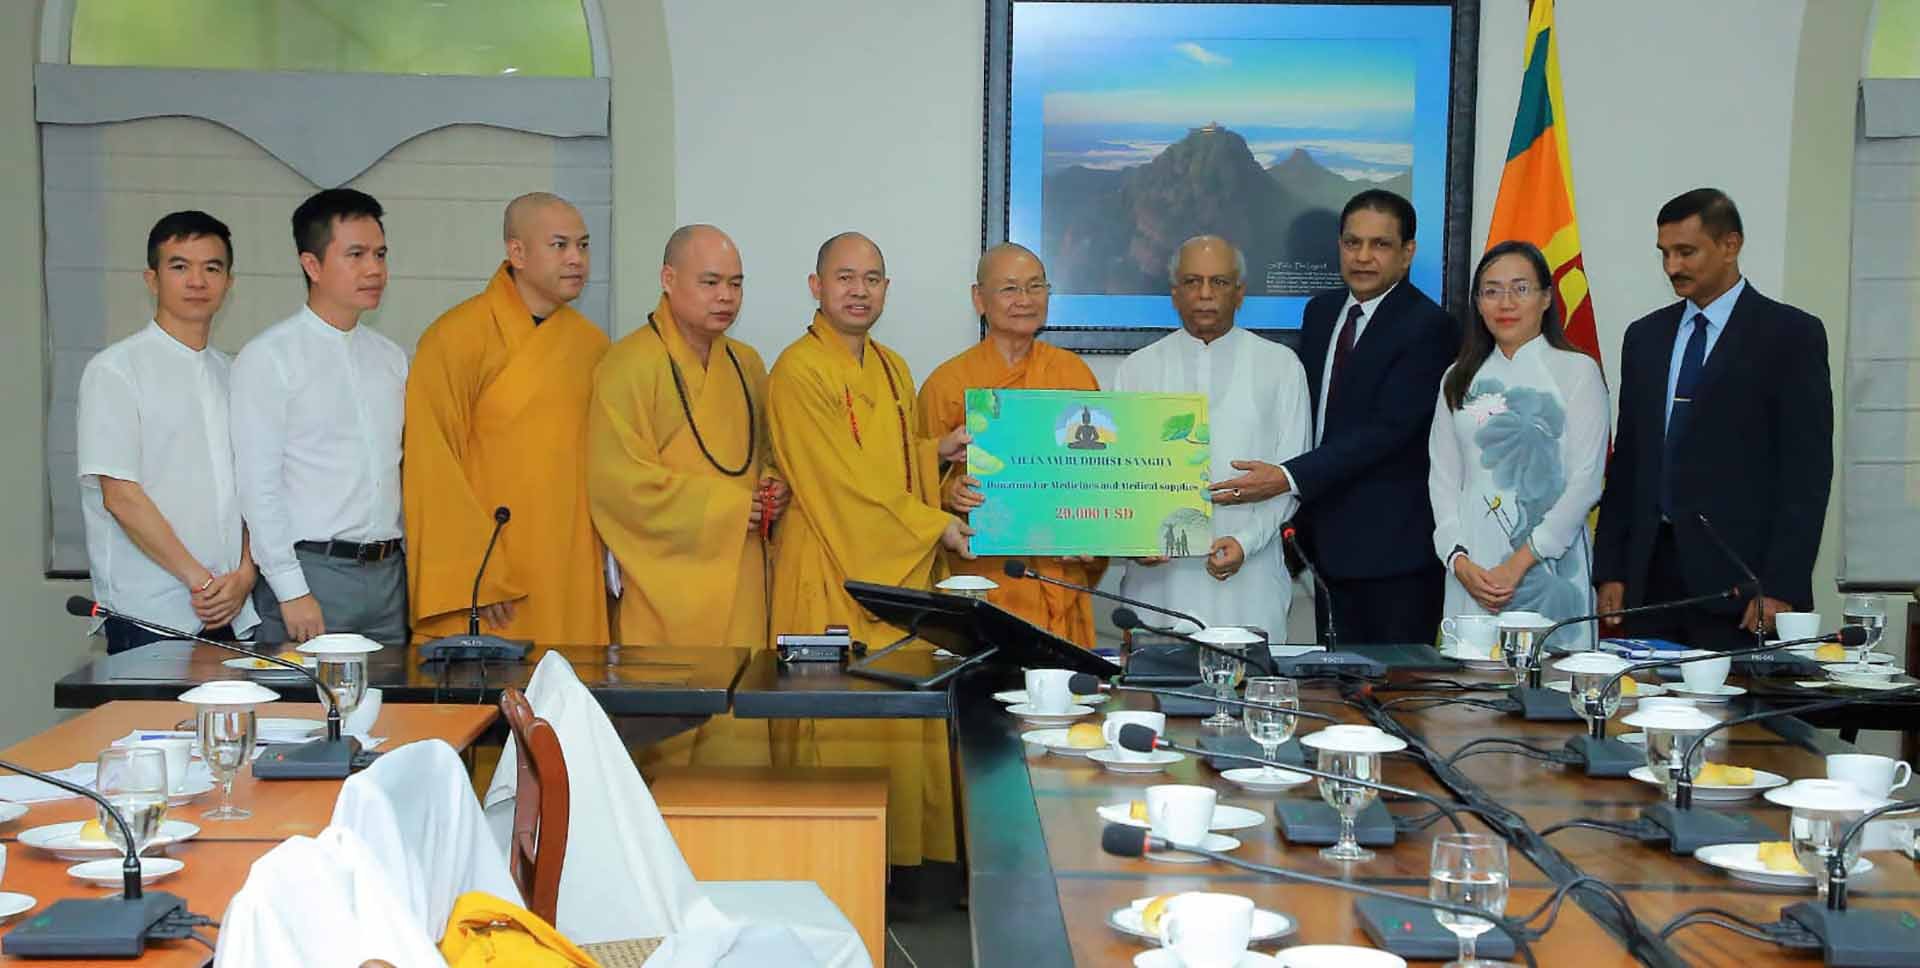 Hòa thượng Thích Viên Minh, Phó Pháp chủ Giáo hội Phật giáo Việt Nam trao tặng 20.000 USD hỗ trợ thuốc men y tế cho Thủ tướng Sri Lanka Dinesh Gunawardena.